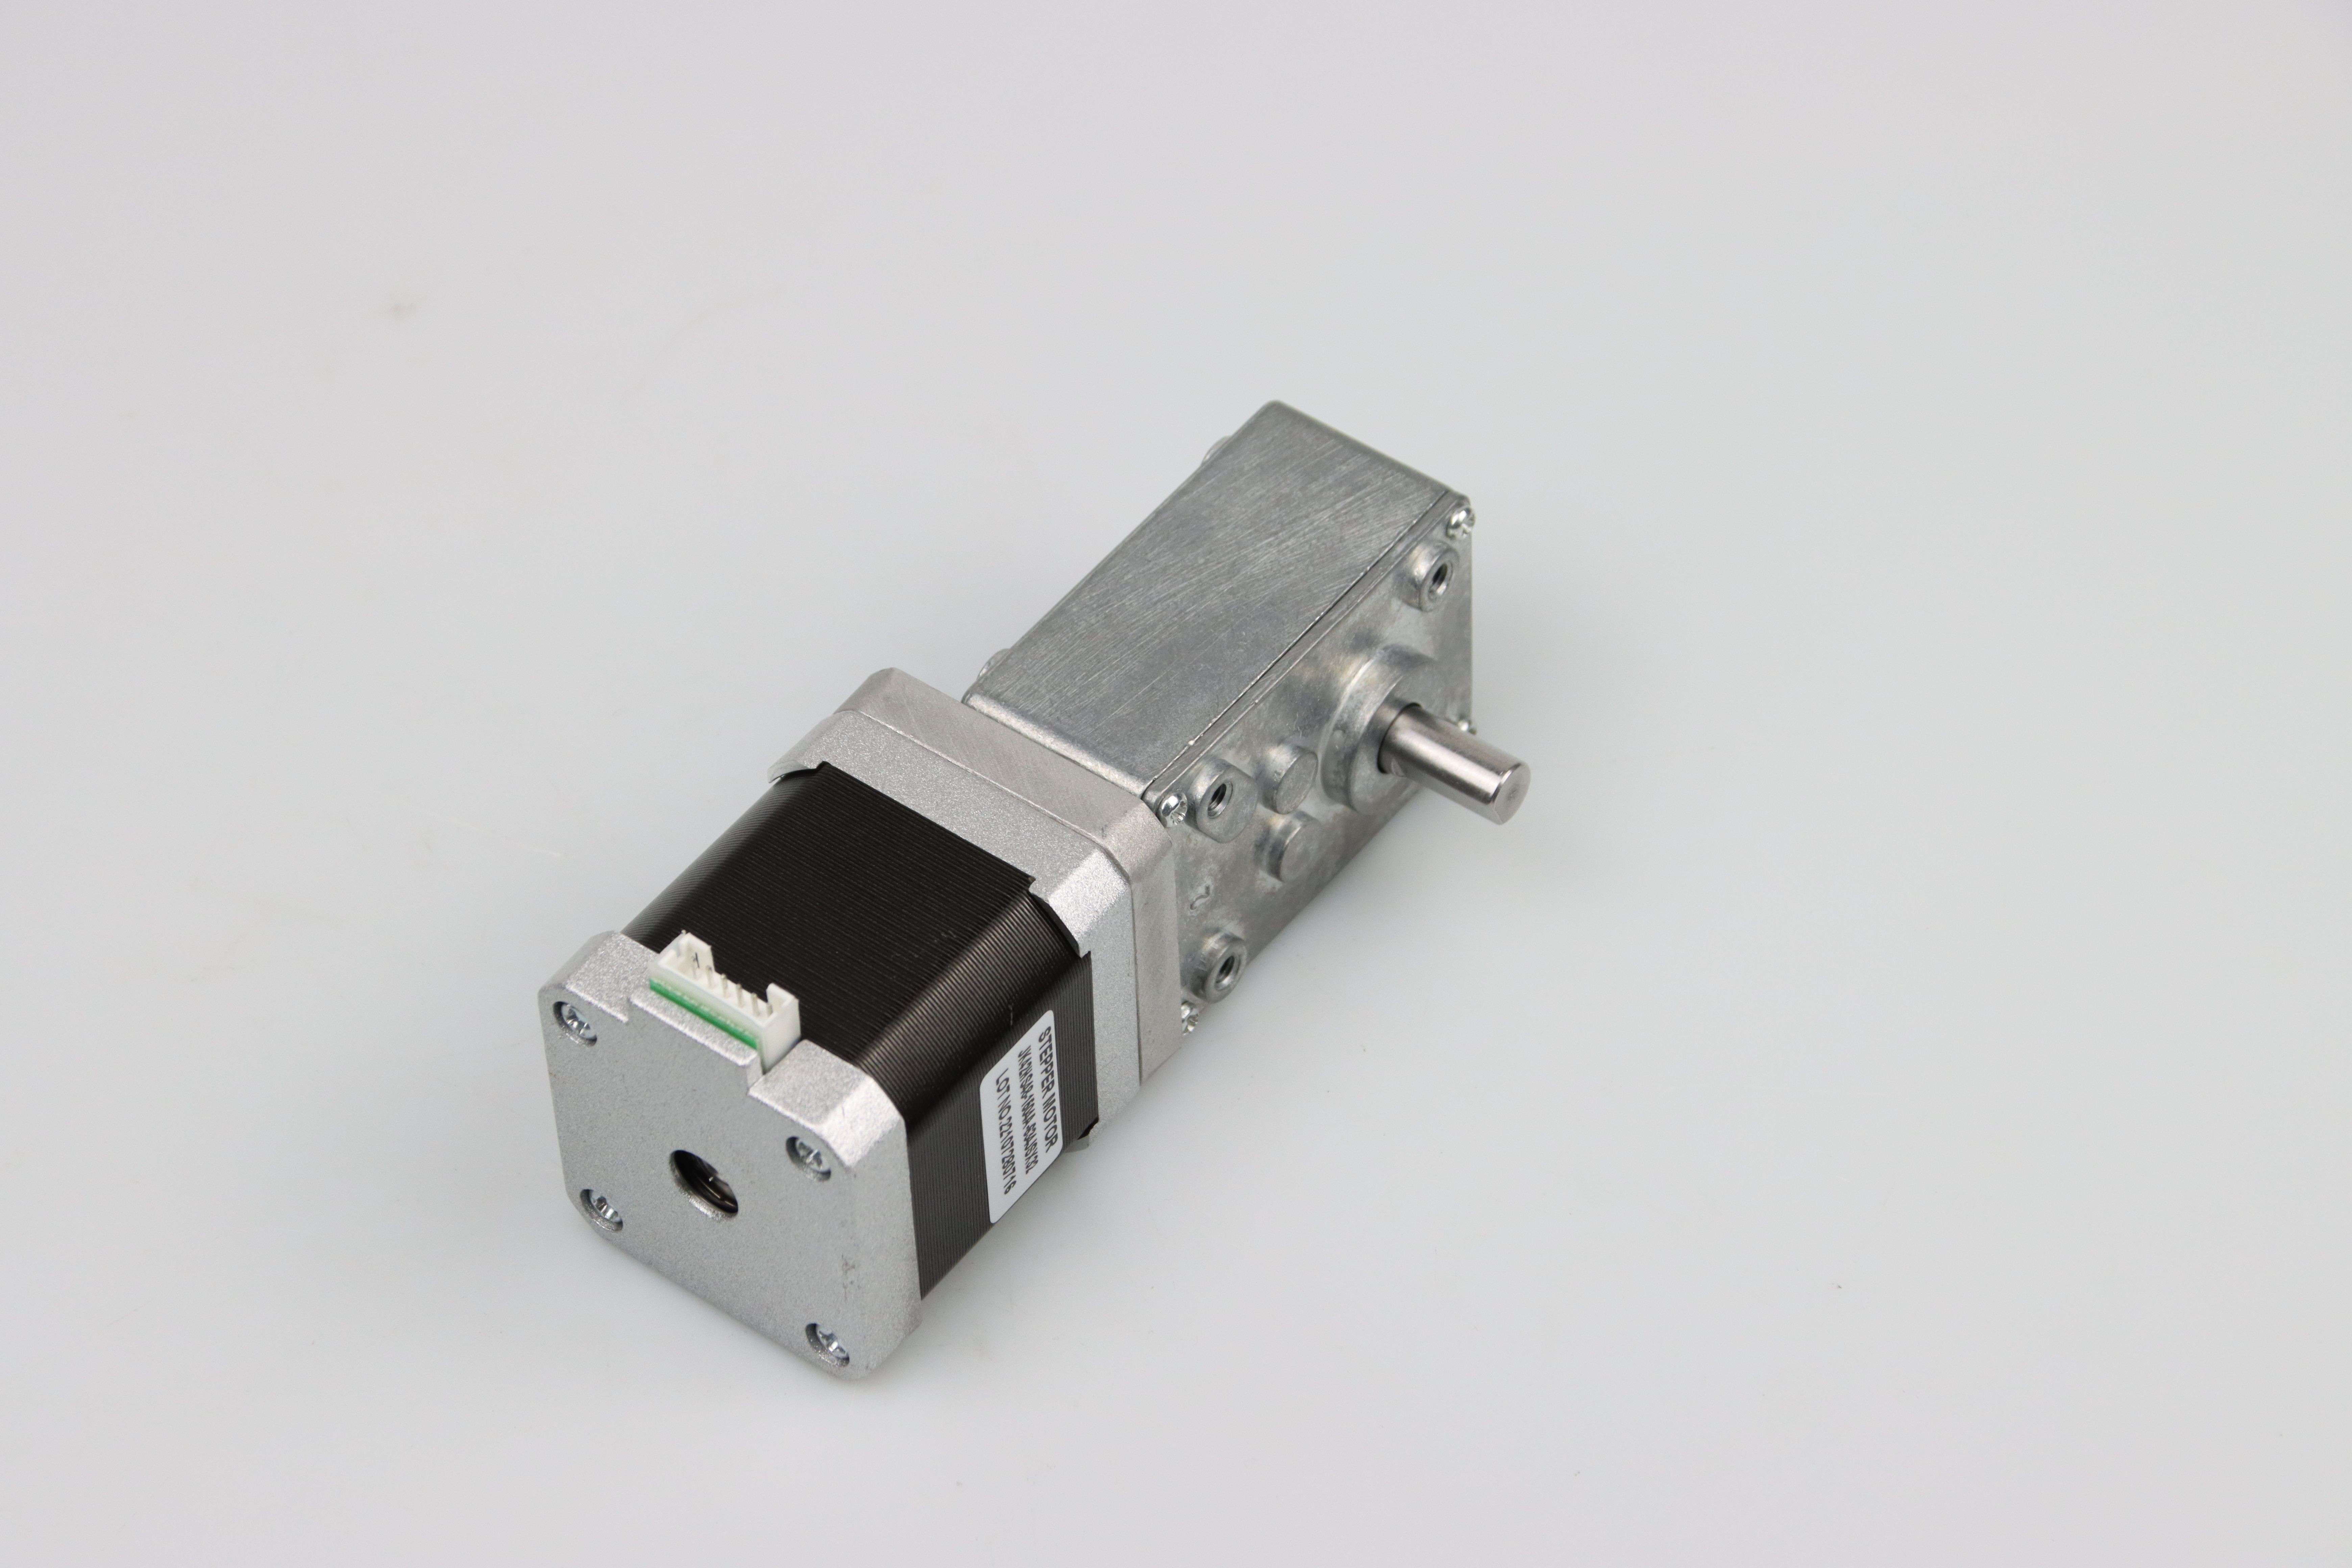 мотор коробки передач червя Nema 17 78.5ozIn 1.5A 5.76V шагая для гравировальных станков лазера